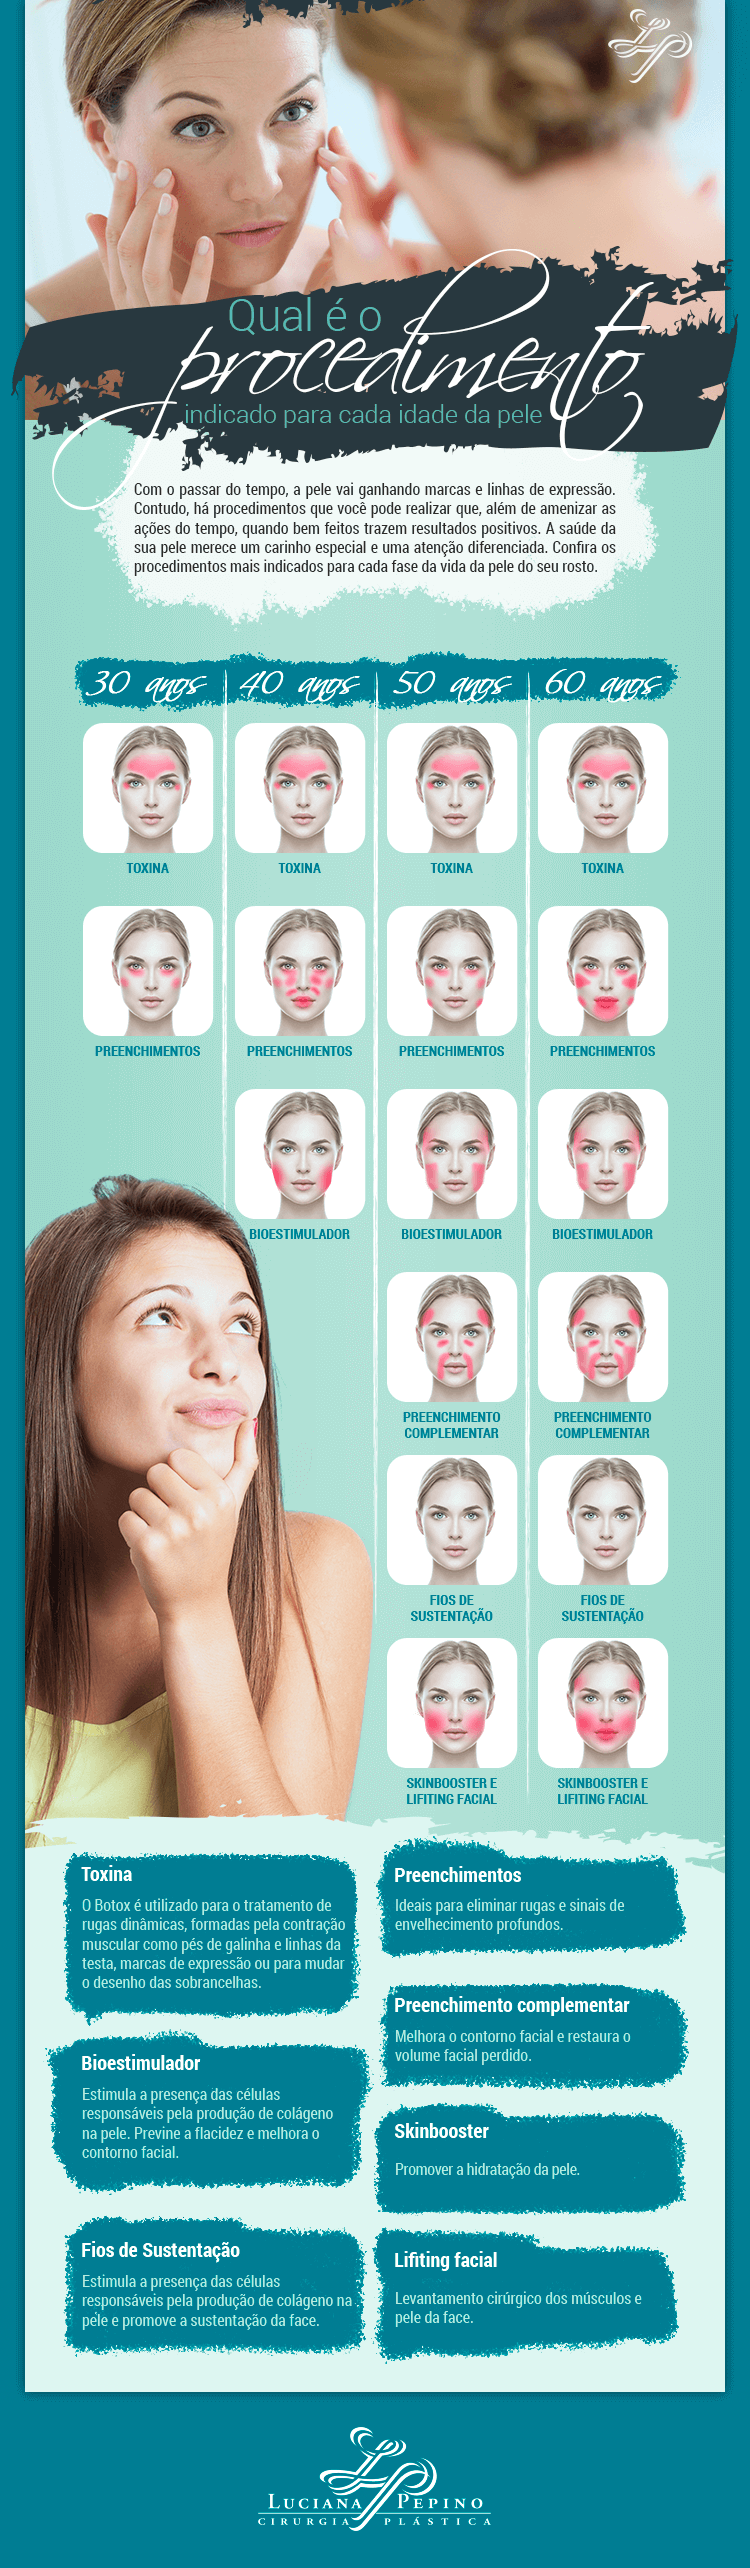 infográfico sobre os cuidados da pele do rosto em cada idade